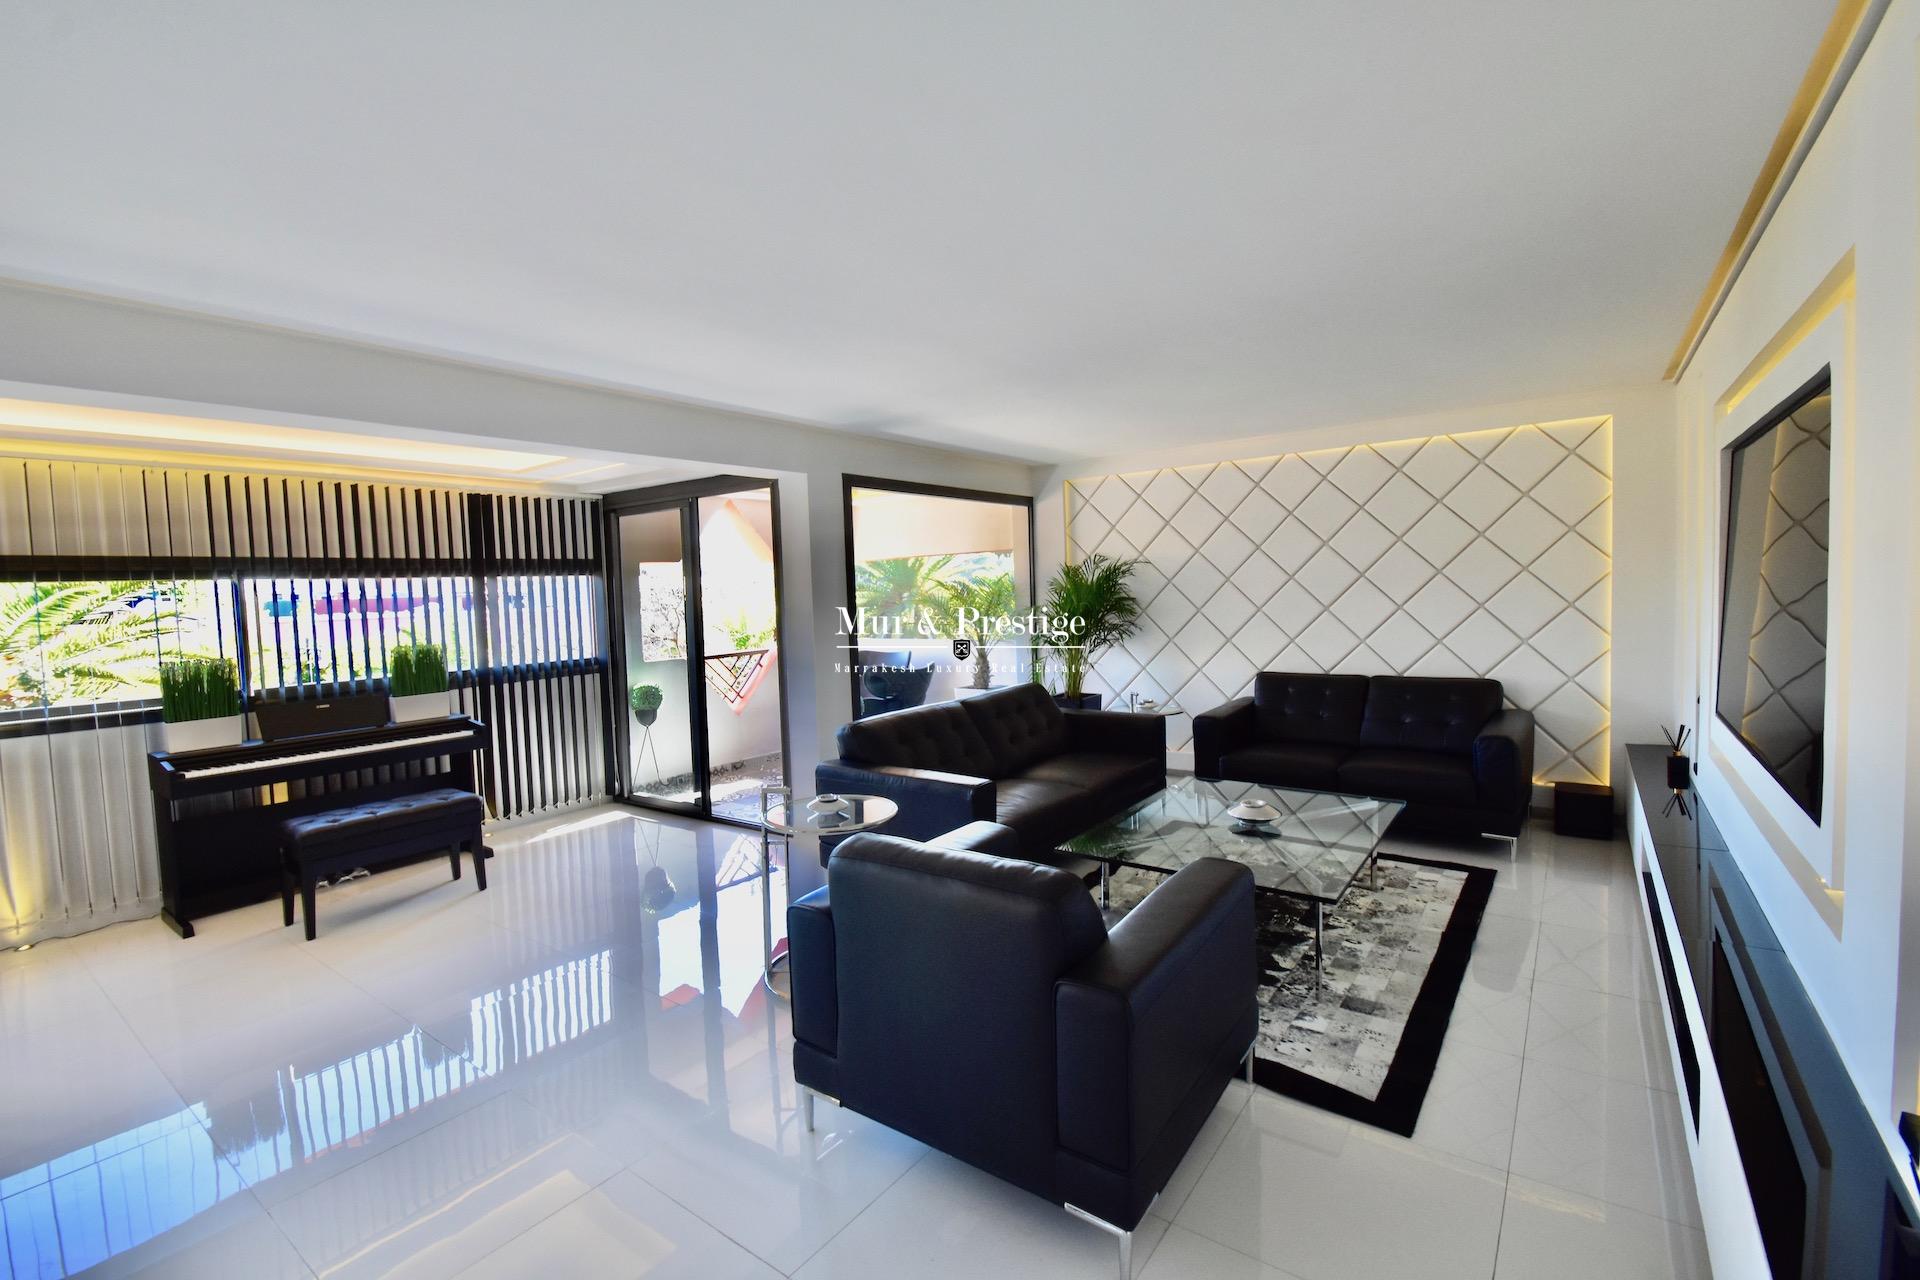 Appartement moderne à vendre au cœur du quartier de l’Hivernage à Marrakech